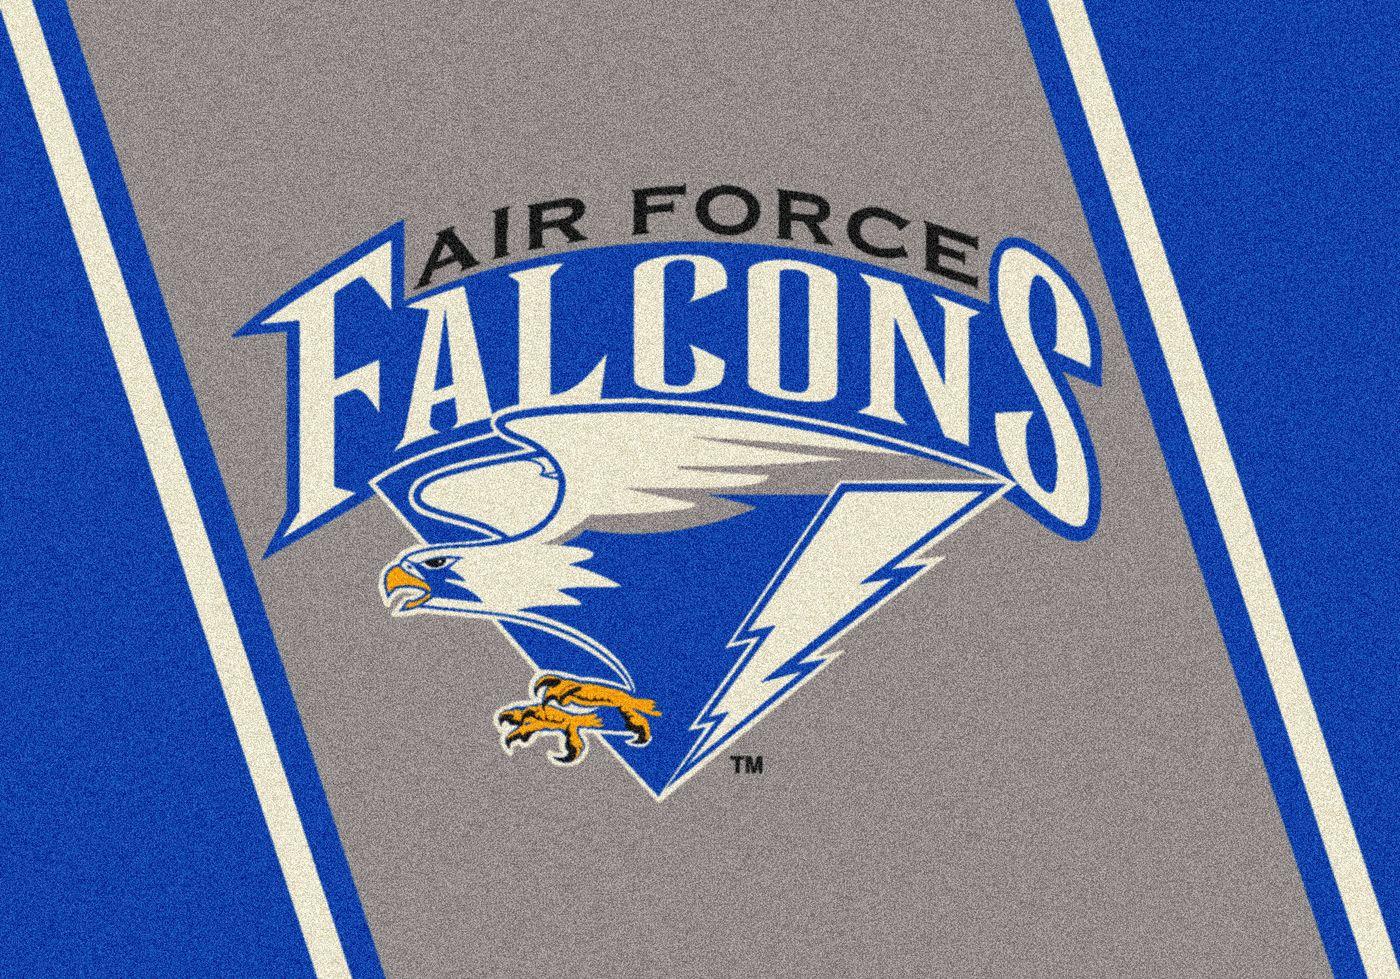 Air Force Football Logo - Air Force College: Air Force College Team